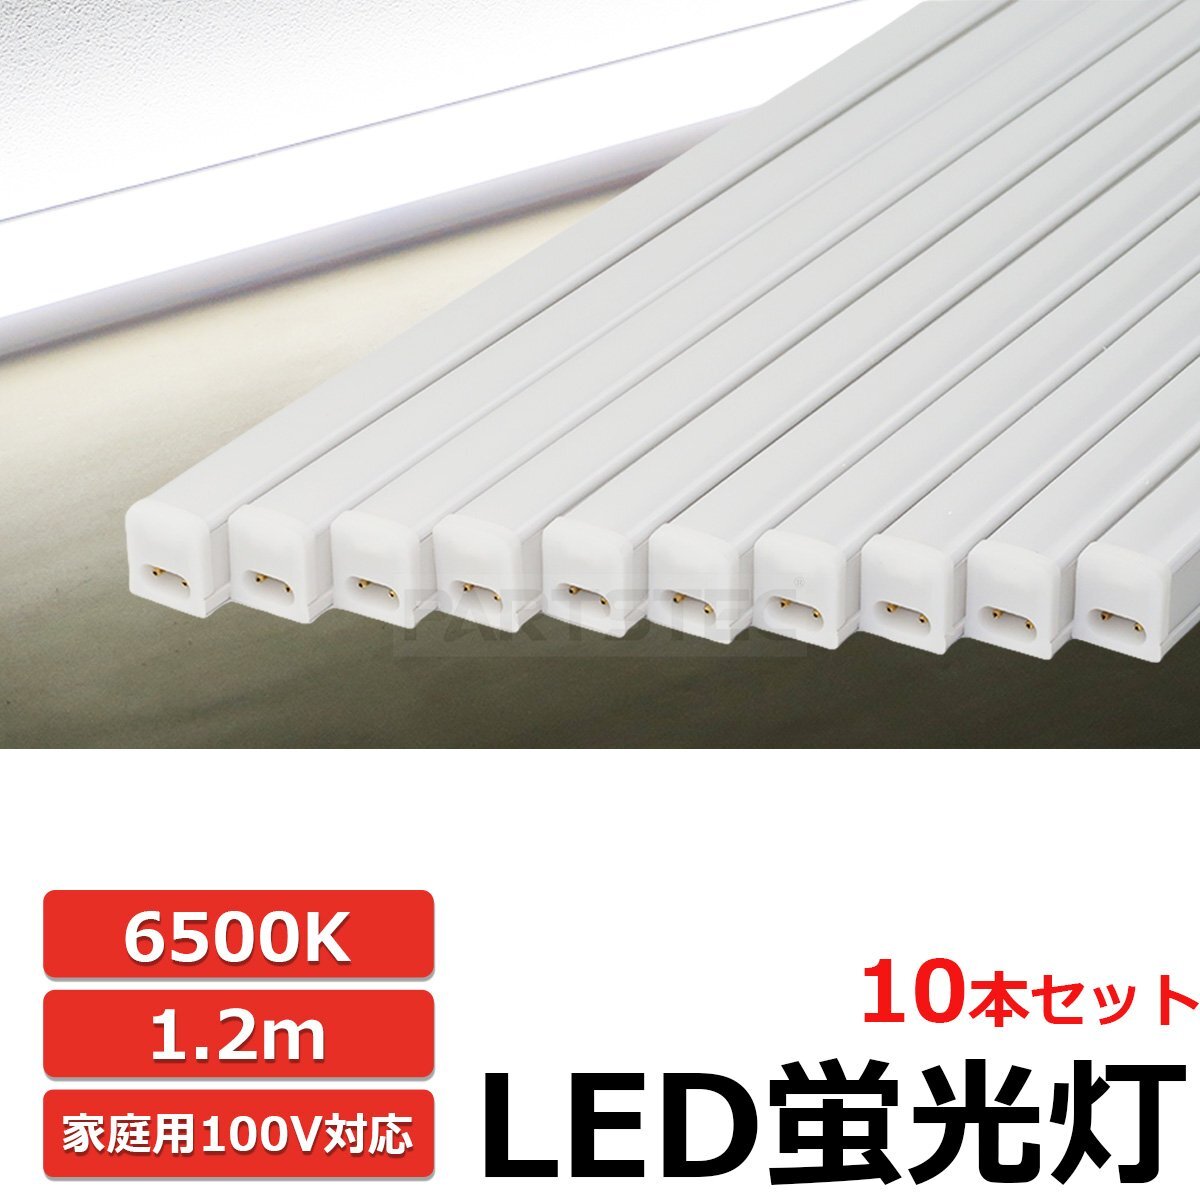 10本セット LED 蛍光灯 バーライト ホワイト 白 スイッチ付 100V 18W 6500K 1.2m 連結可能 軽量 天井 廊下 物置 間接照明 / 149-70の画像1